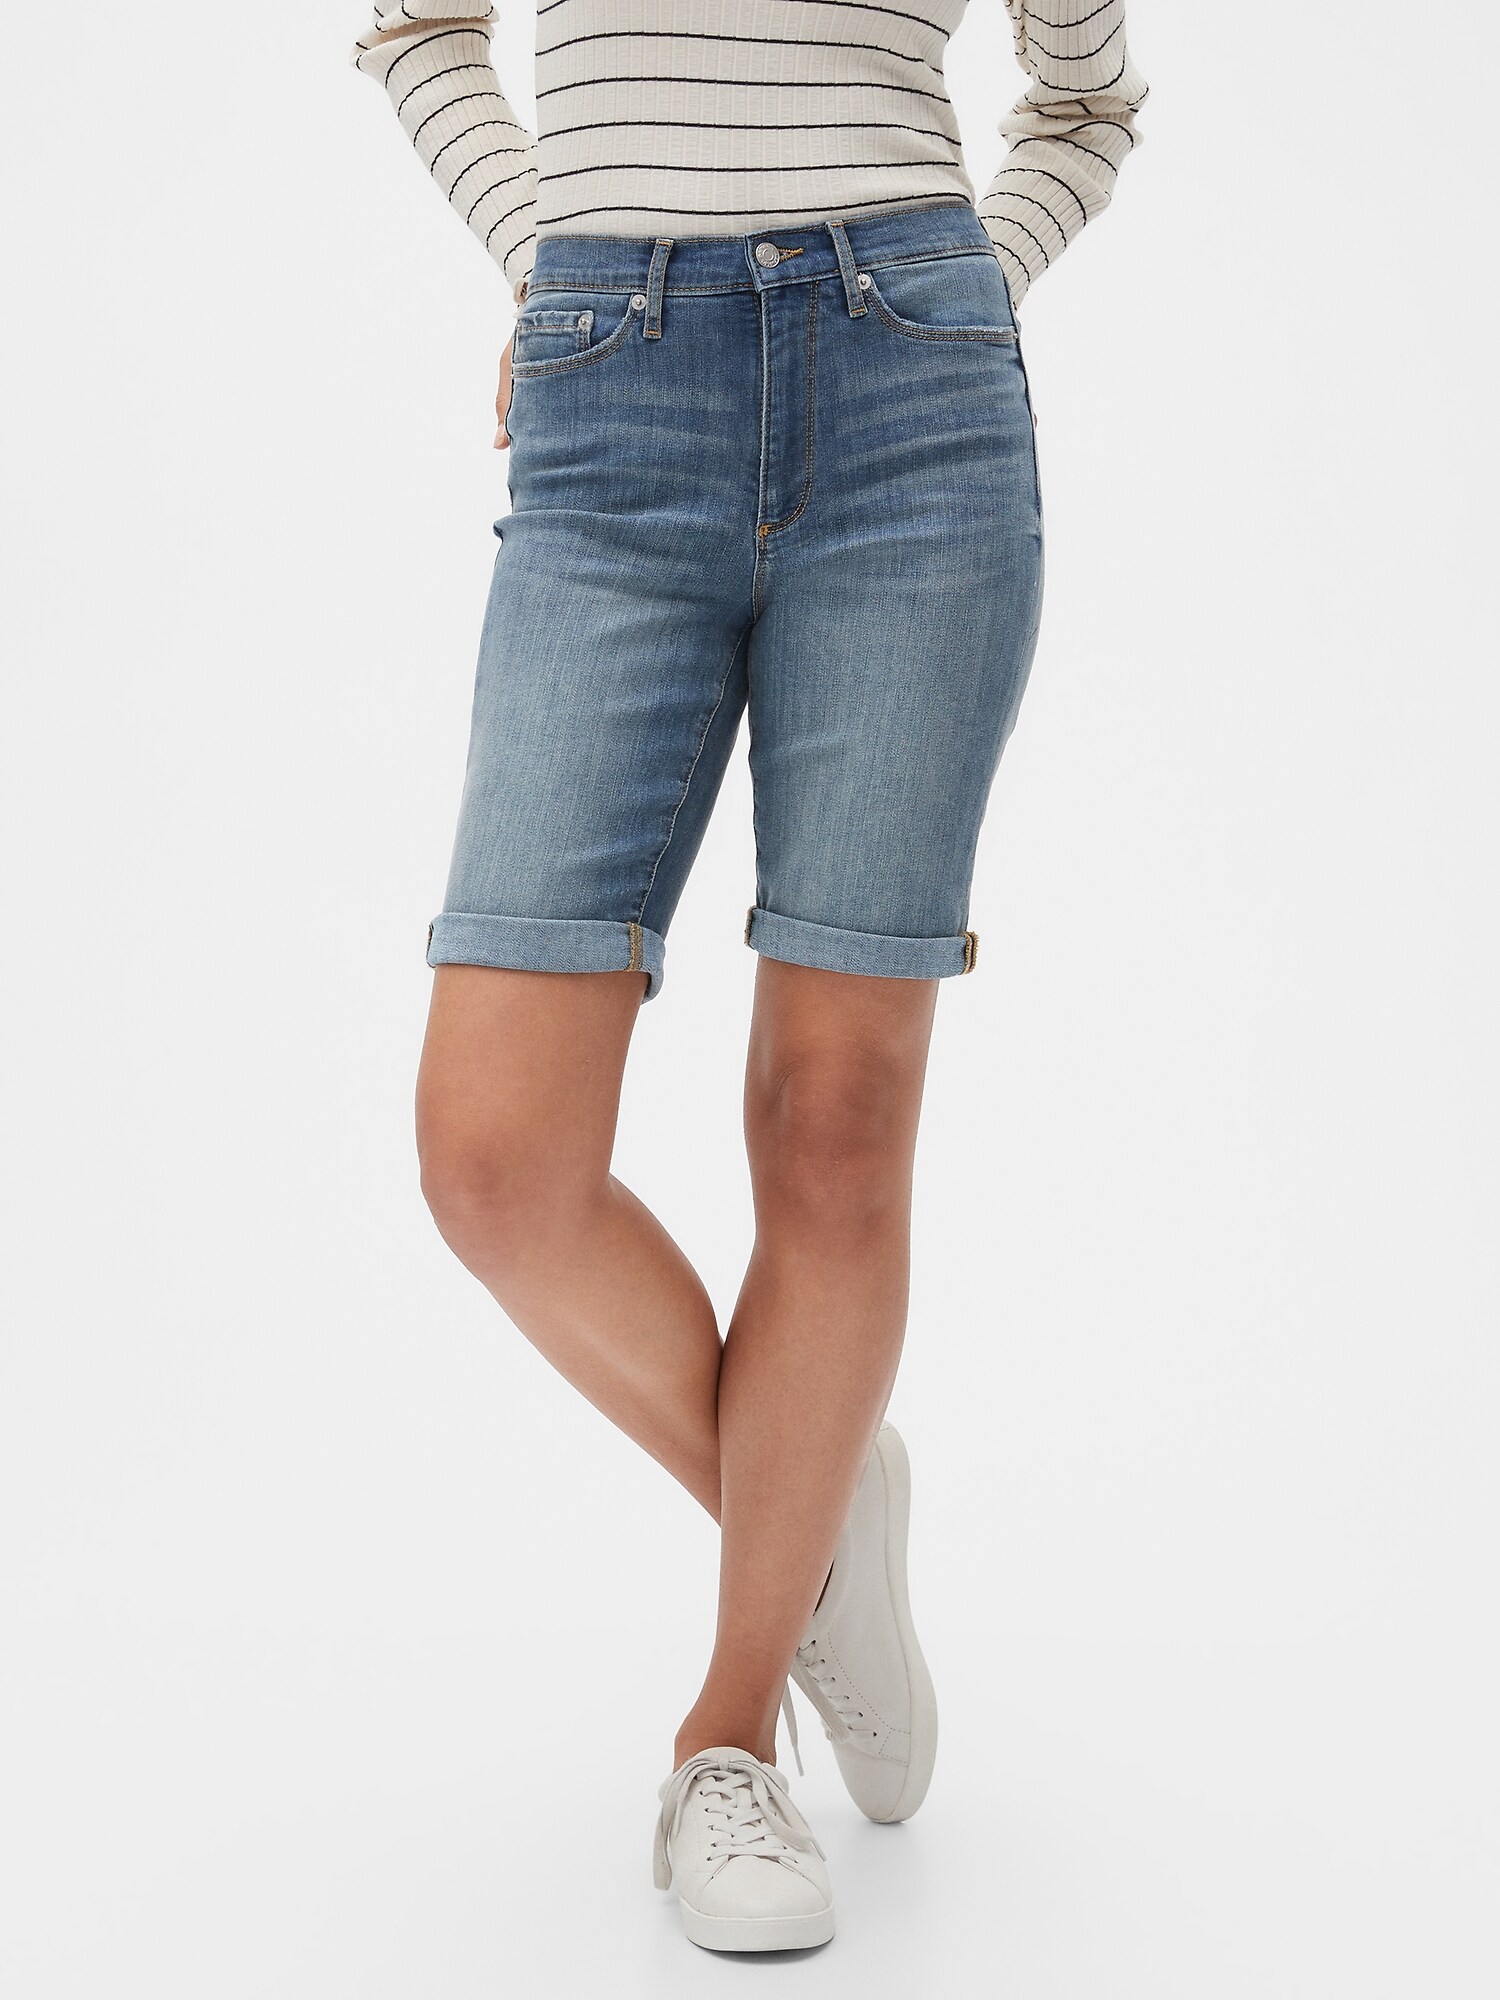 Petite High-Rise Medium Wash Bermuda Shorts - 10 inch inseam